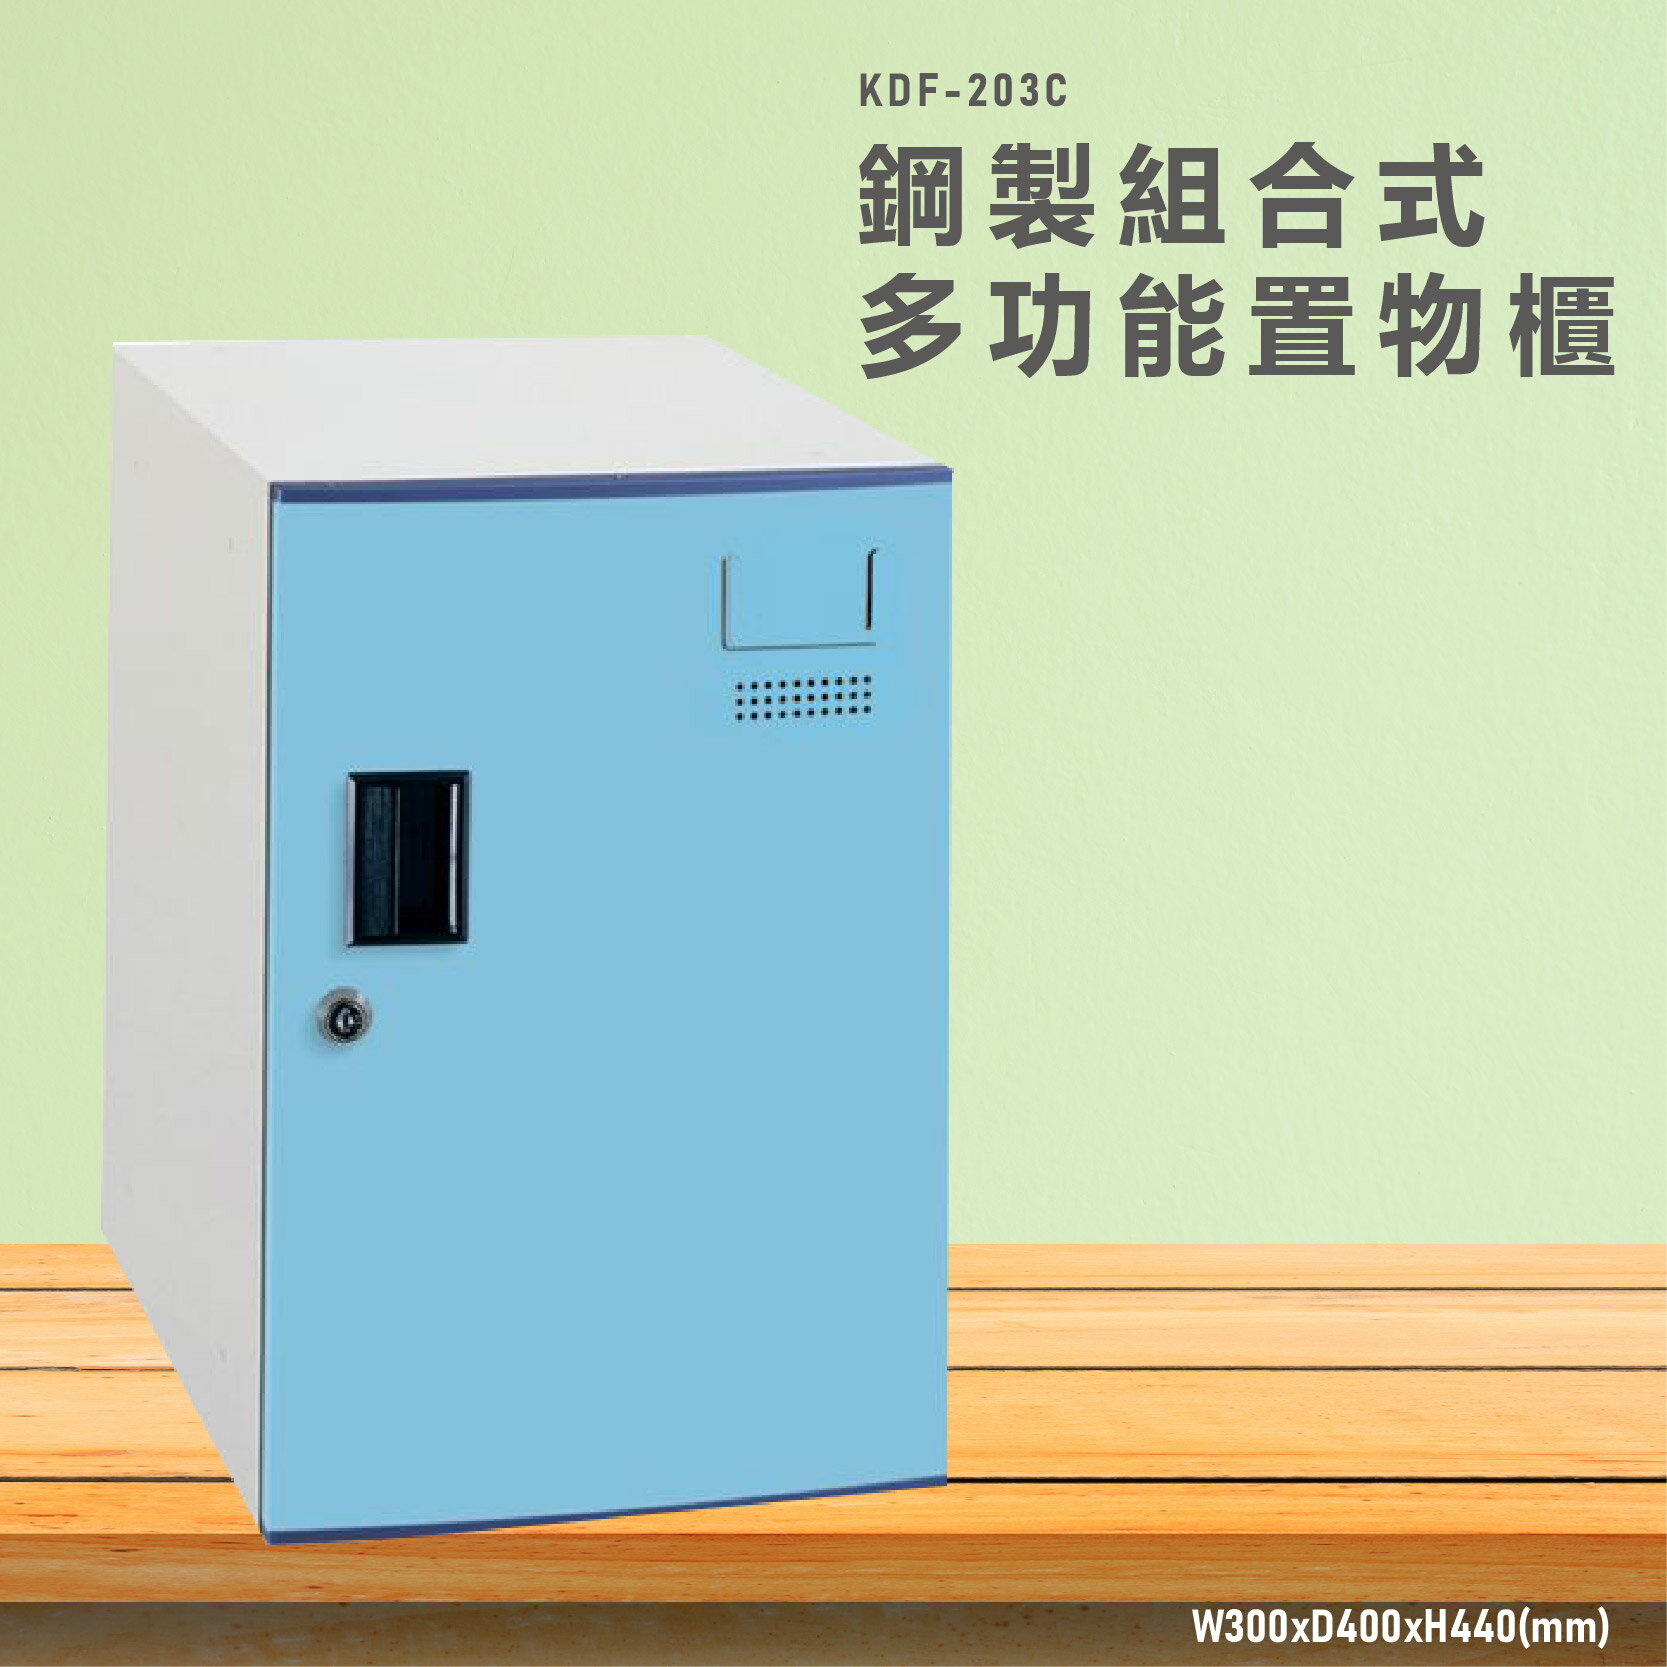 熱銷款➤大富鑰匙櫃 KDF-203C 多用途鋼製組合式置物櫃 可換購密碼鎖 (宿舍/員工/鞋櫃/衣櫃/更衣櫃/收納櫃)